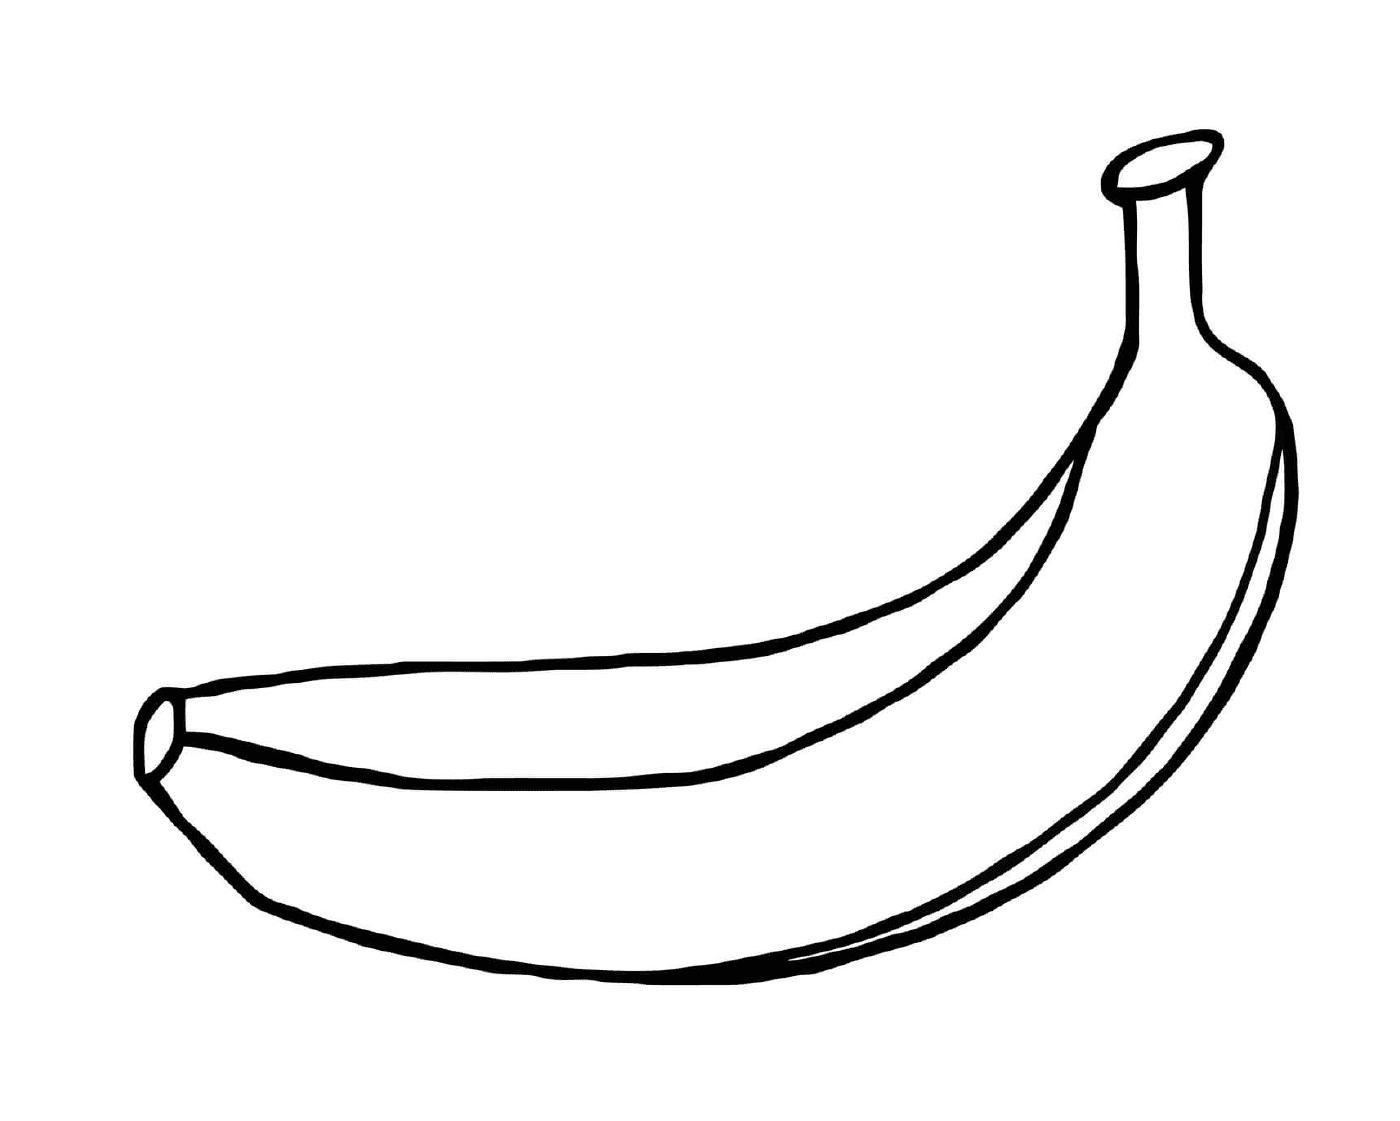  Банан 